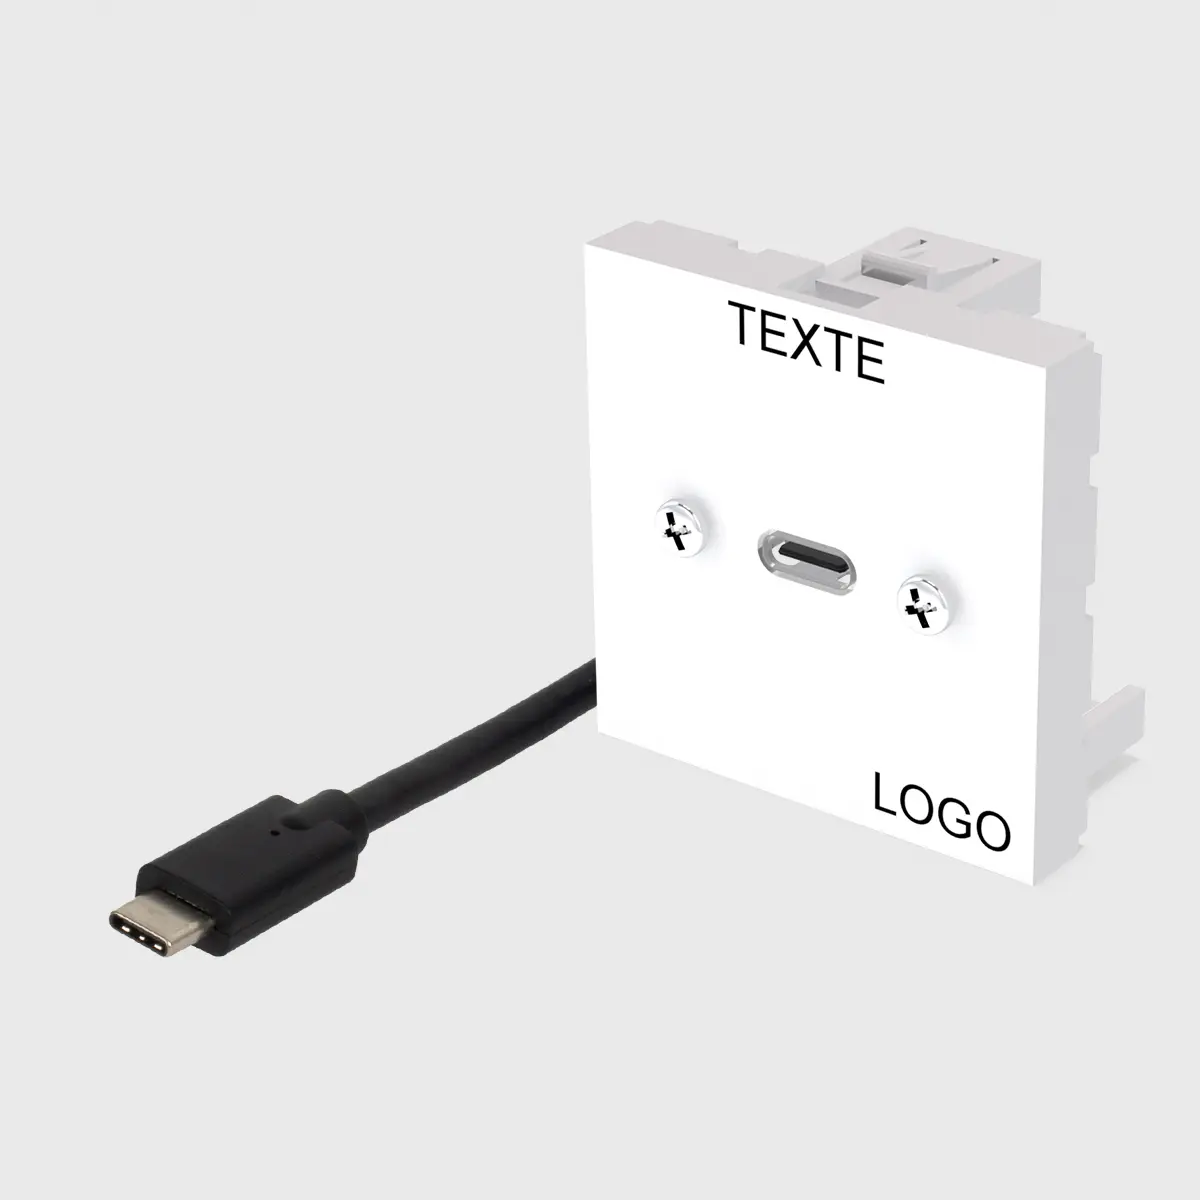 Plastron 45 équipé 1 USB C surmoulé 2m vers fiche USB C M, textes et logo gravés